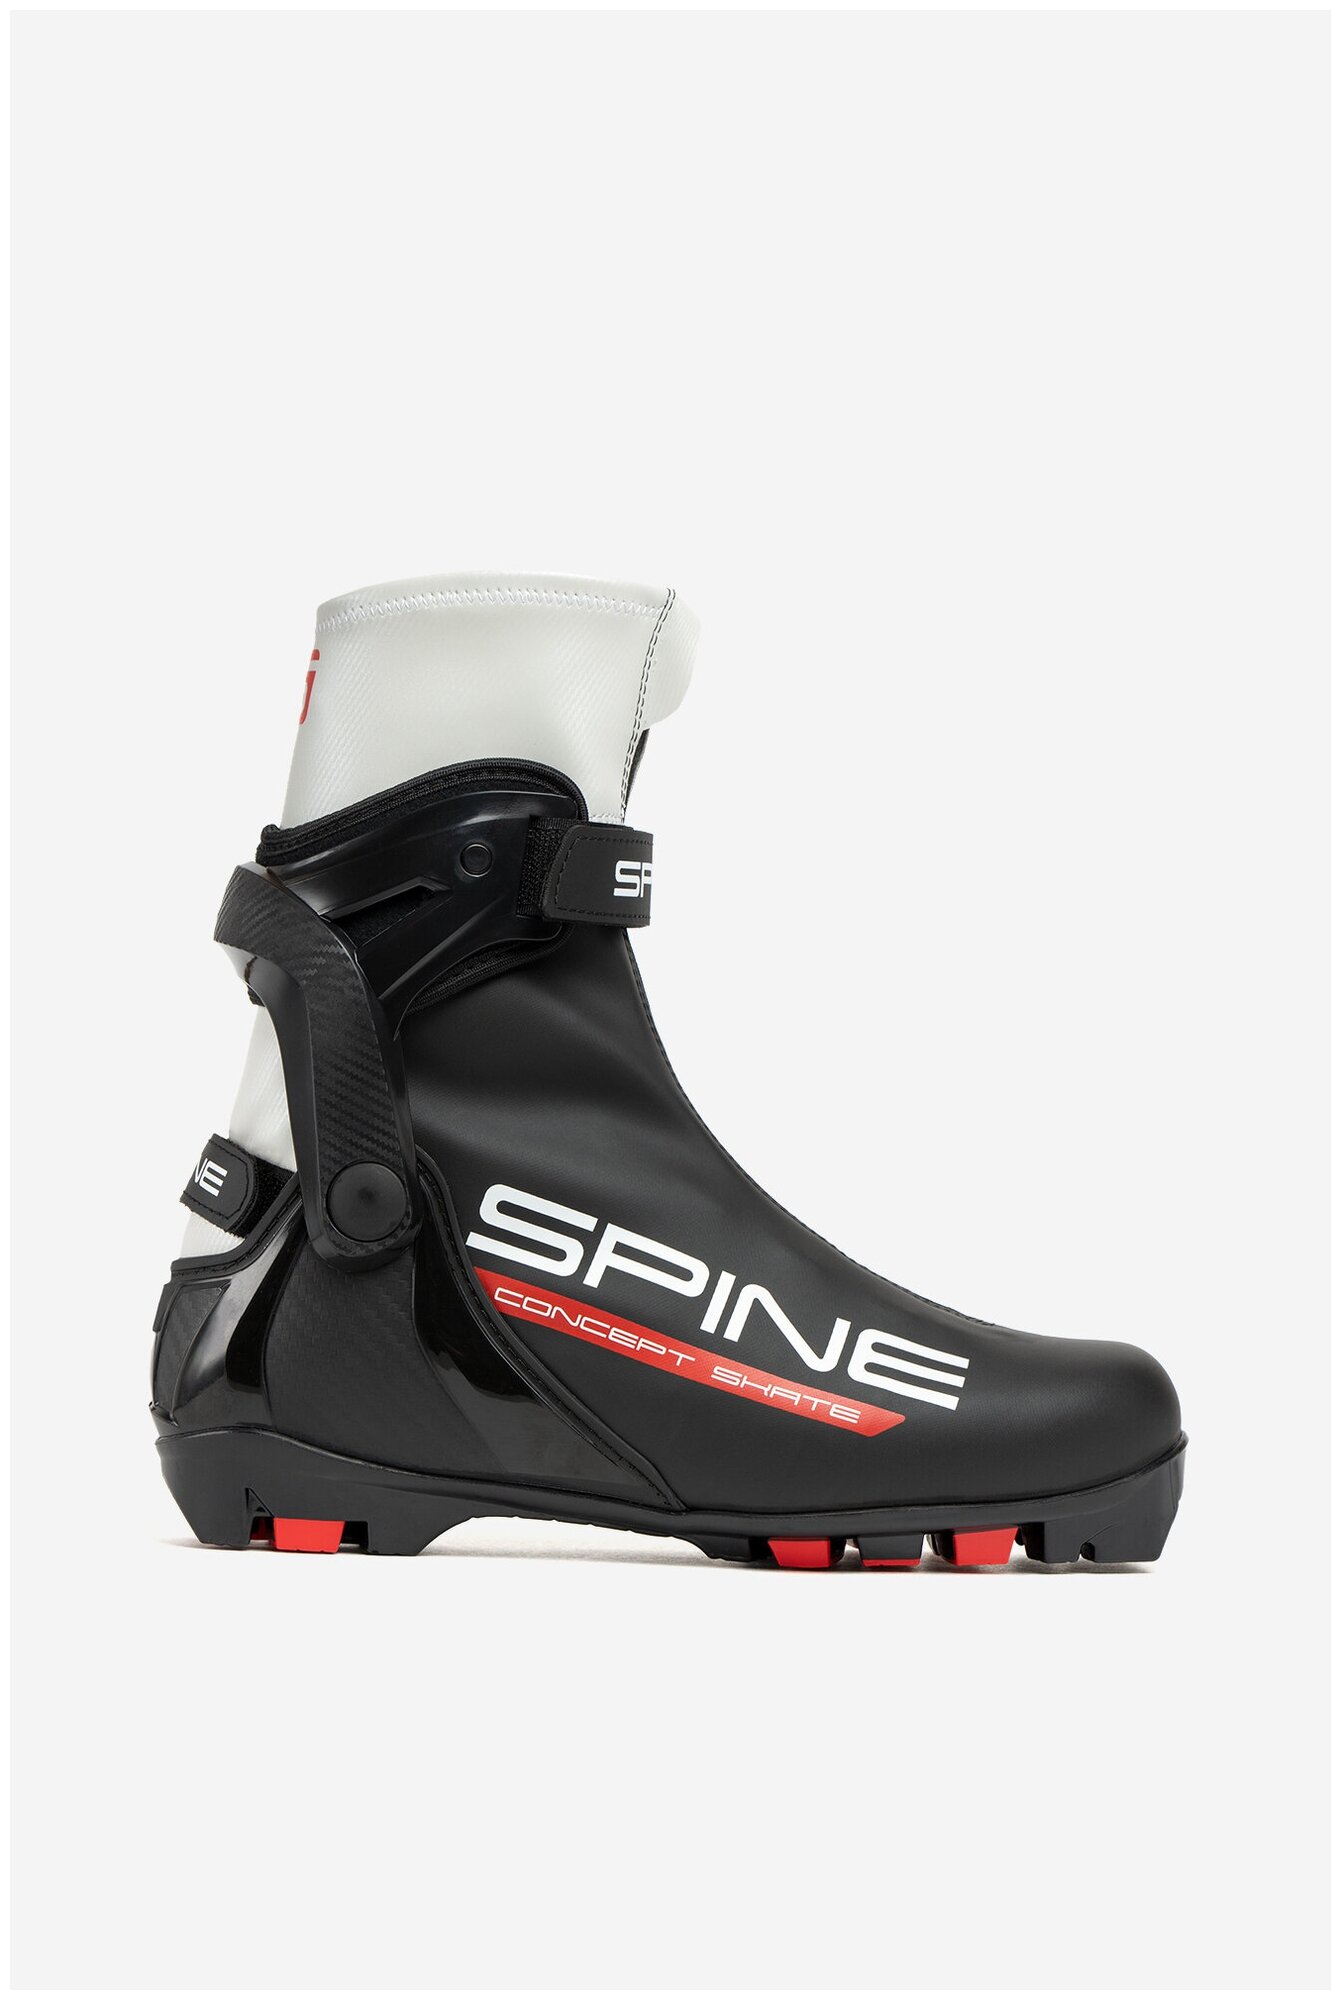 Лыжные ботинки Spine Concept Skate 296-22 NNN (р.44)